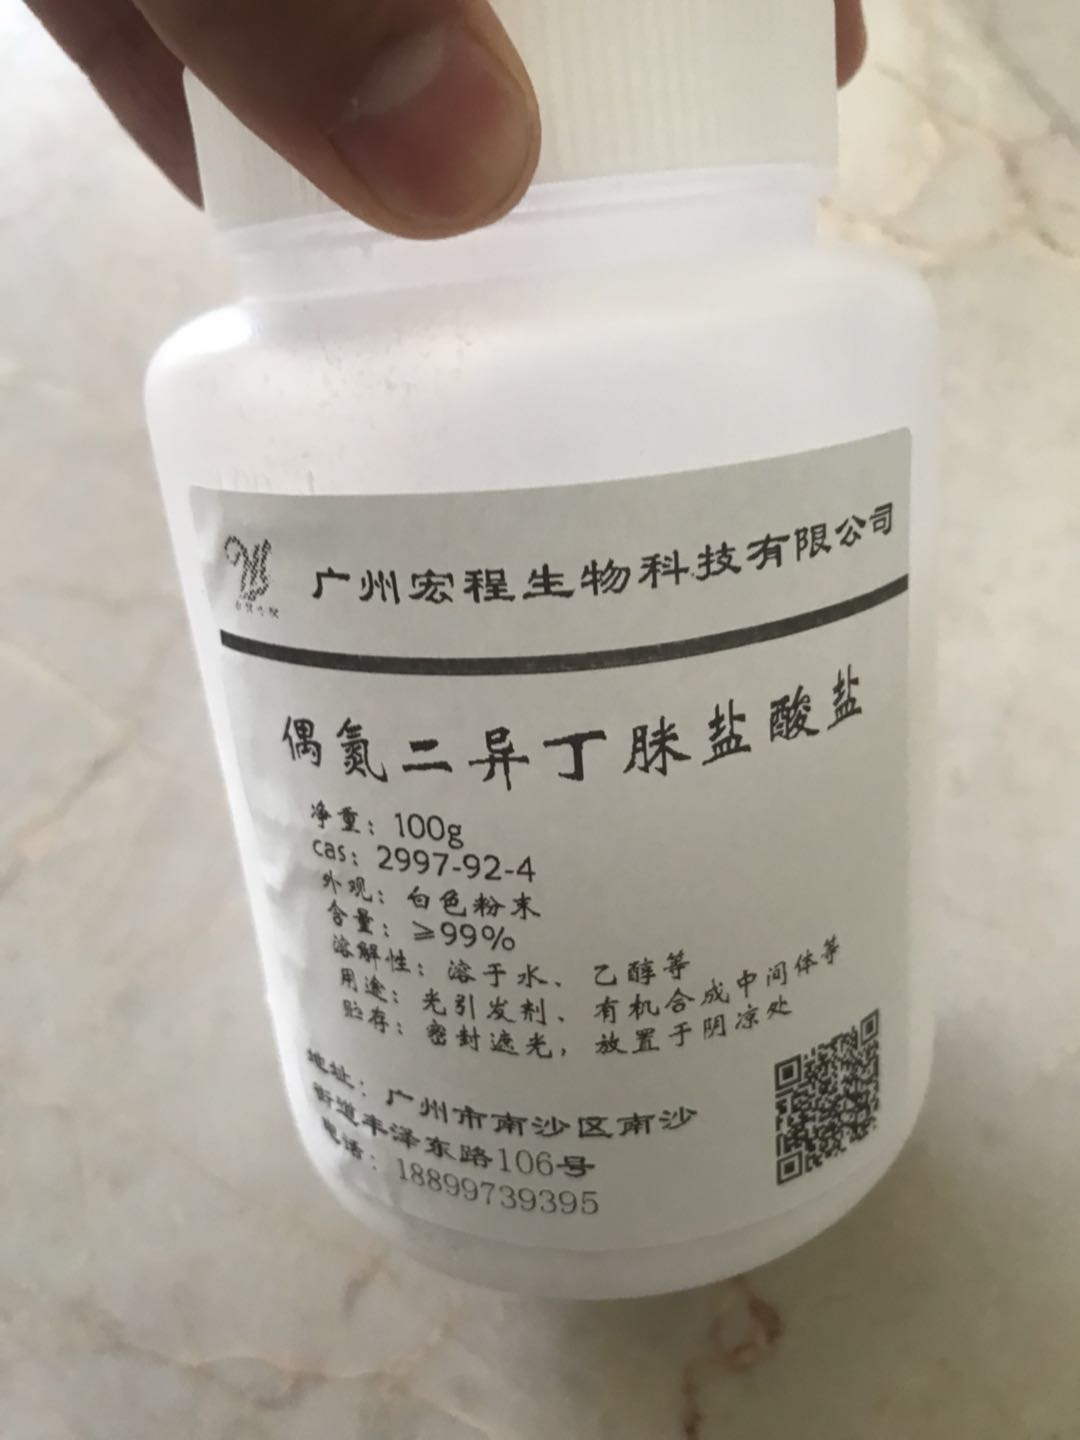 盐酸多巴酚丁胺注射液2ml - 南国药业